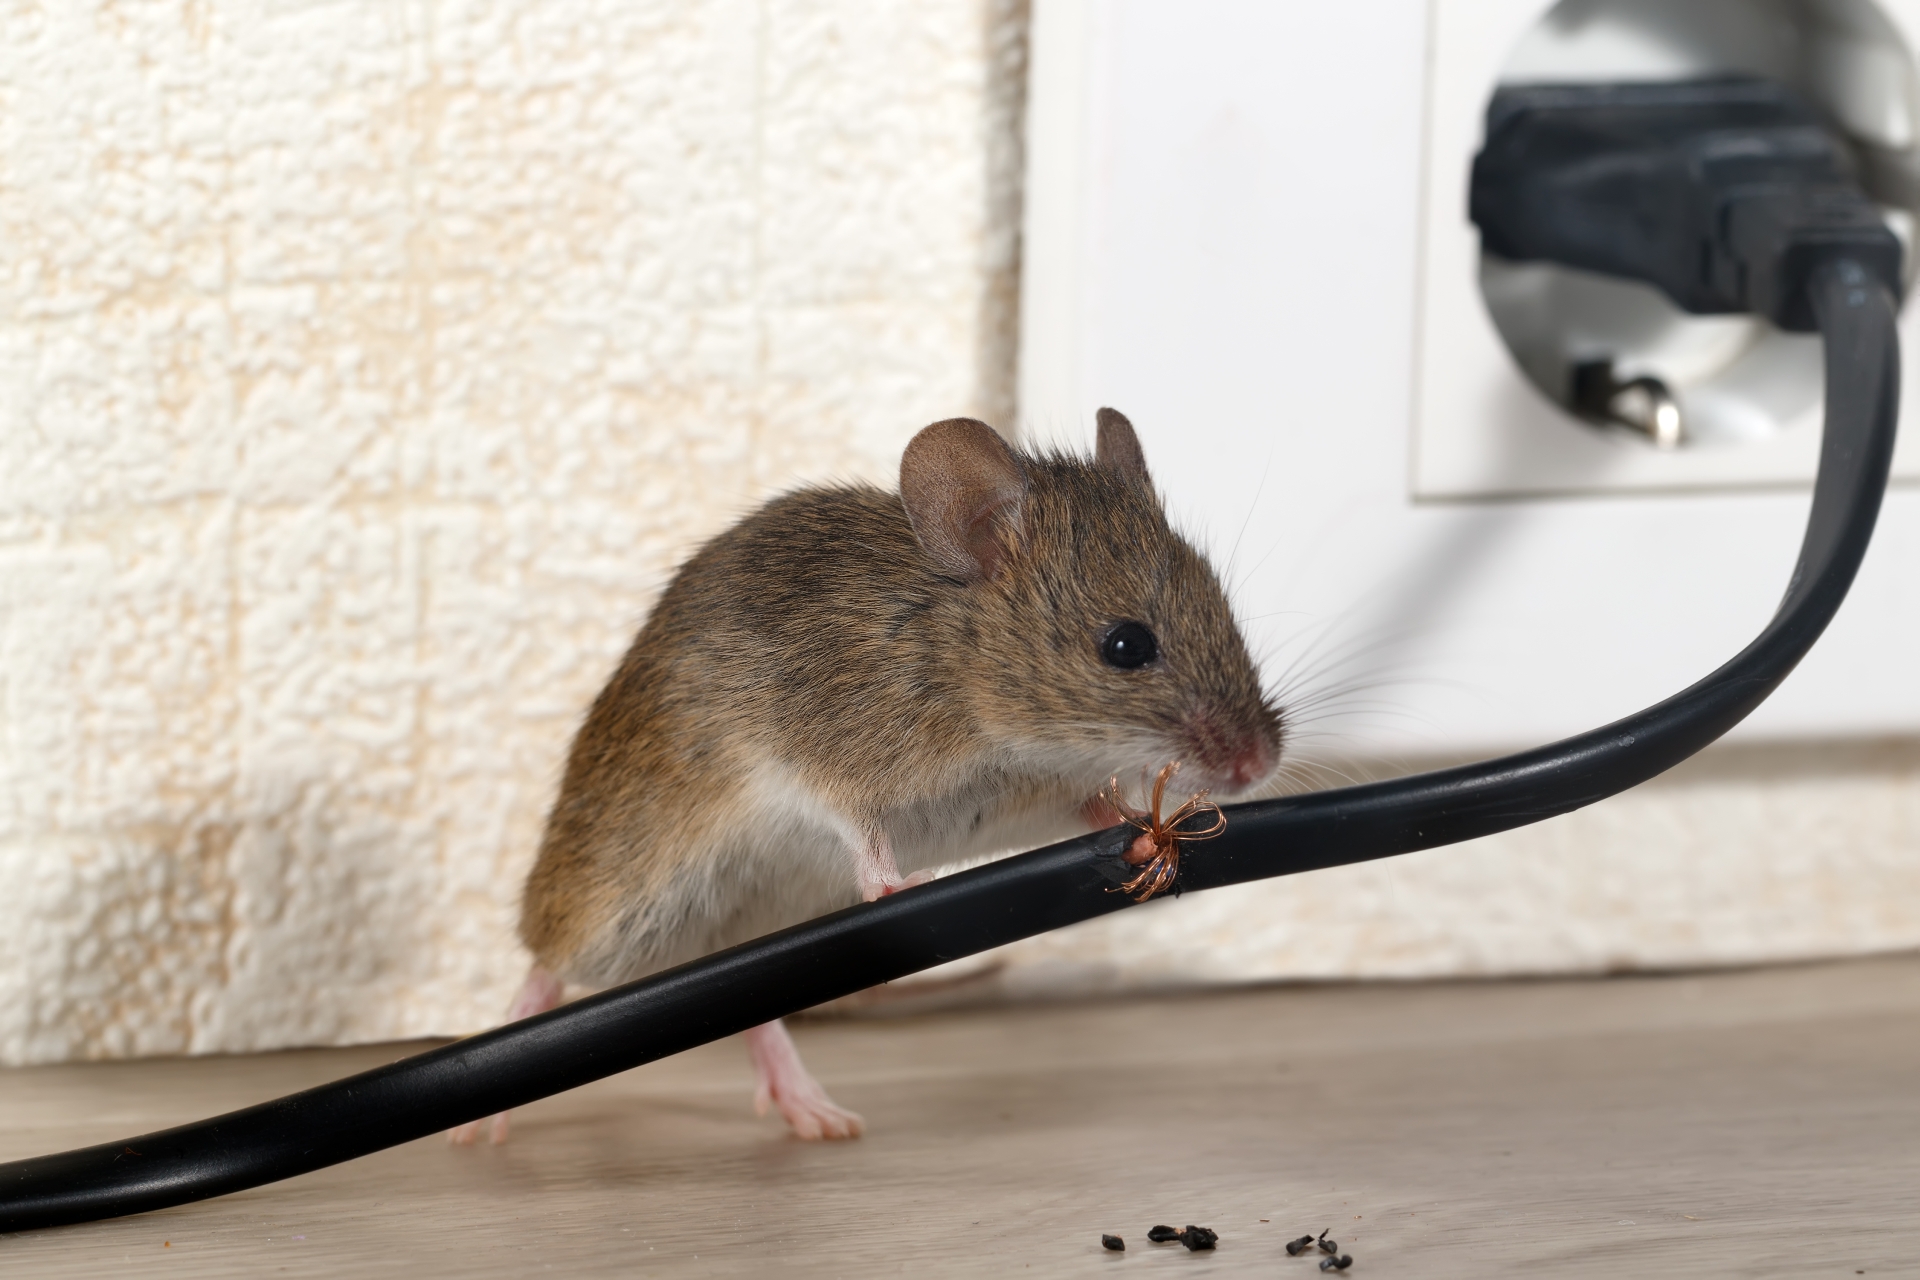 Mice Infestation, Pest Control in Chislehurst, Elmstead, BR7. Call Now 020 8166 9746